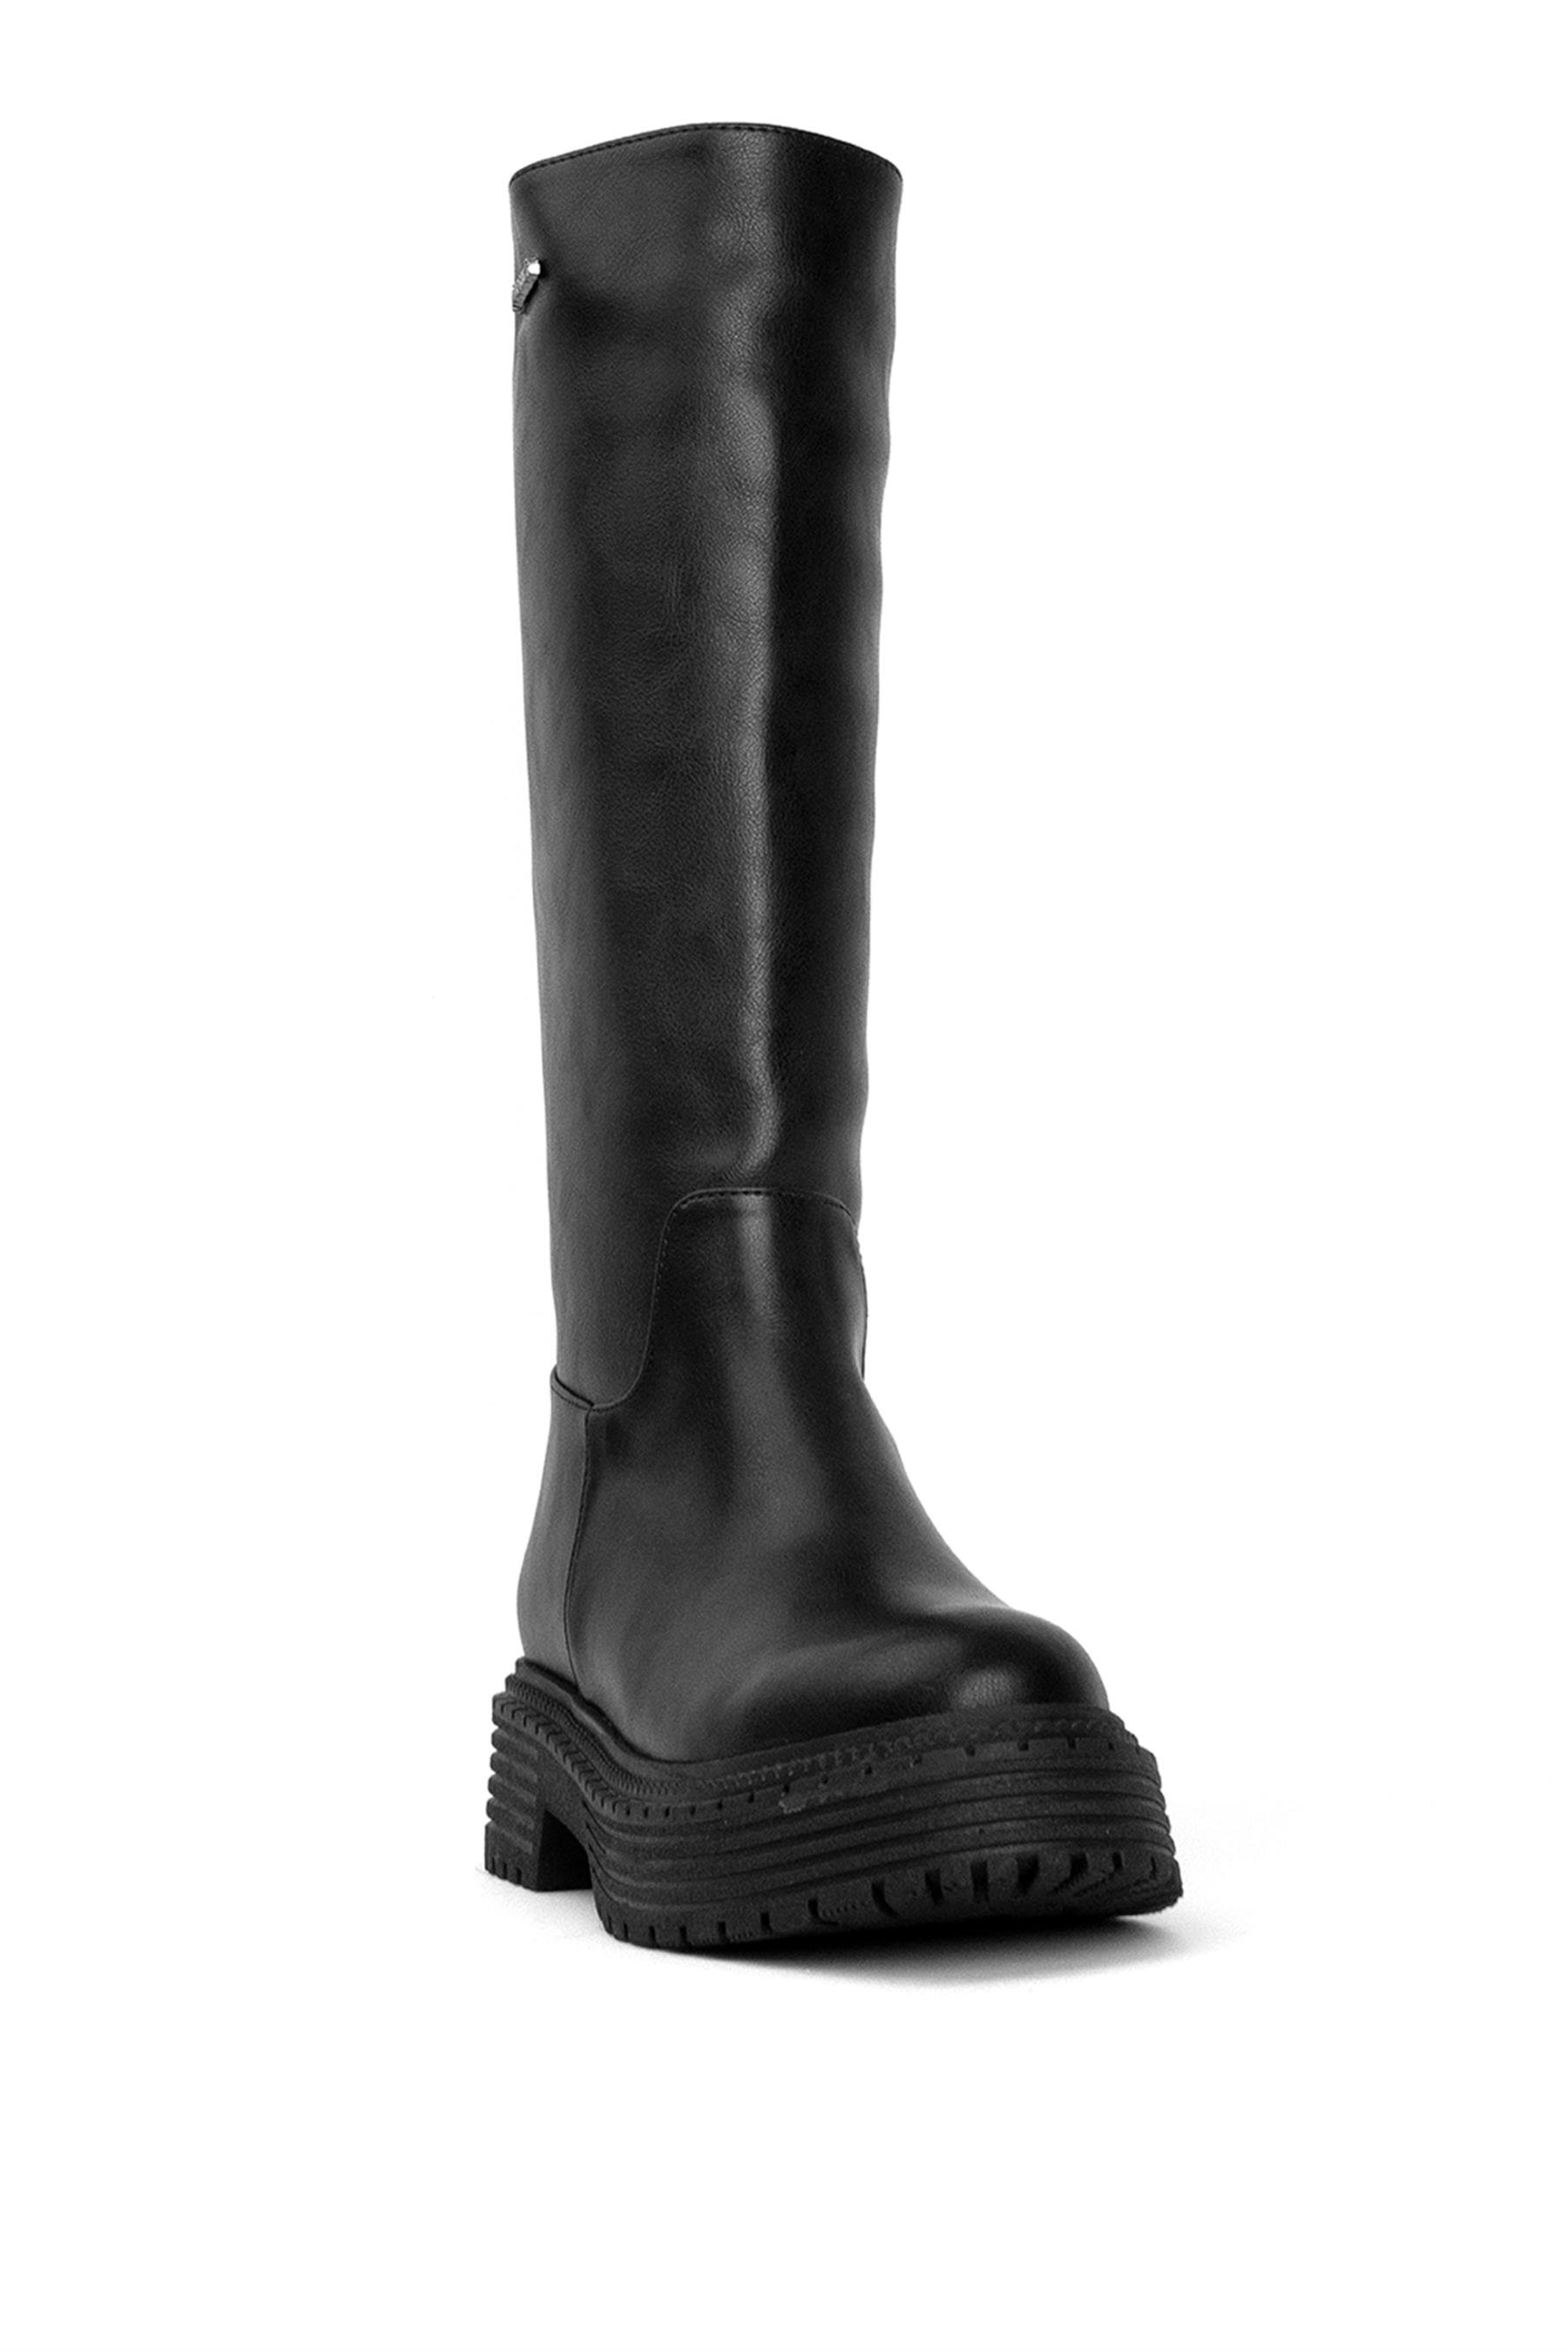 Pierre Cardin PC-52443 Kadın Klasik Çizme Siyah - Ayakkabı Fuarı Elit